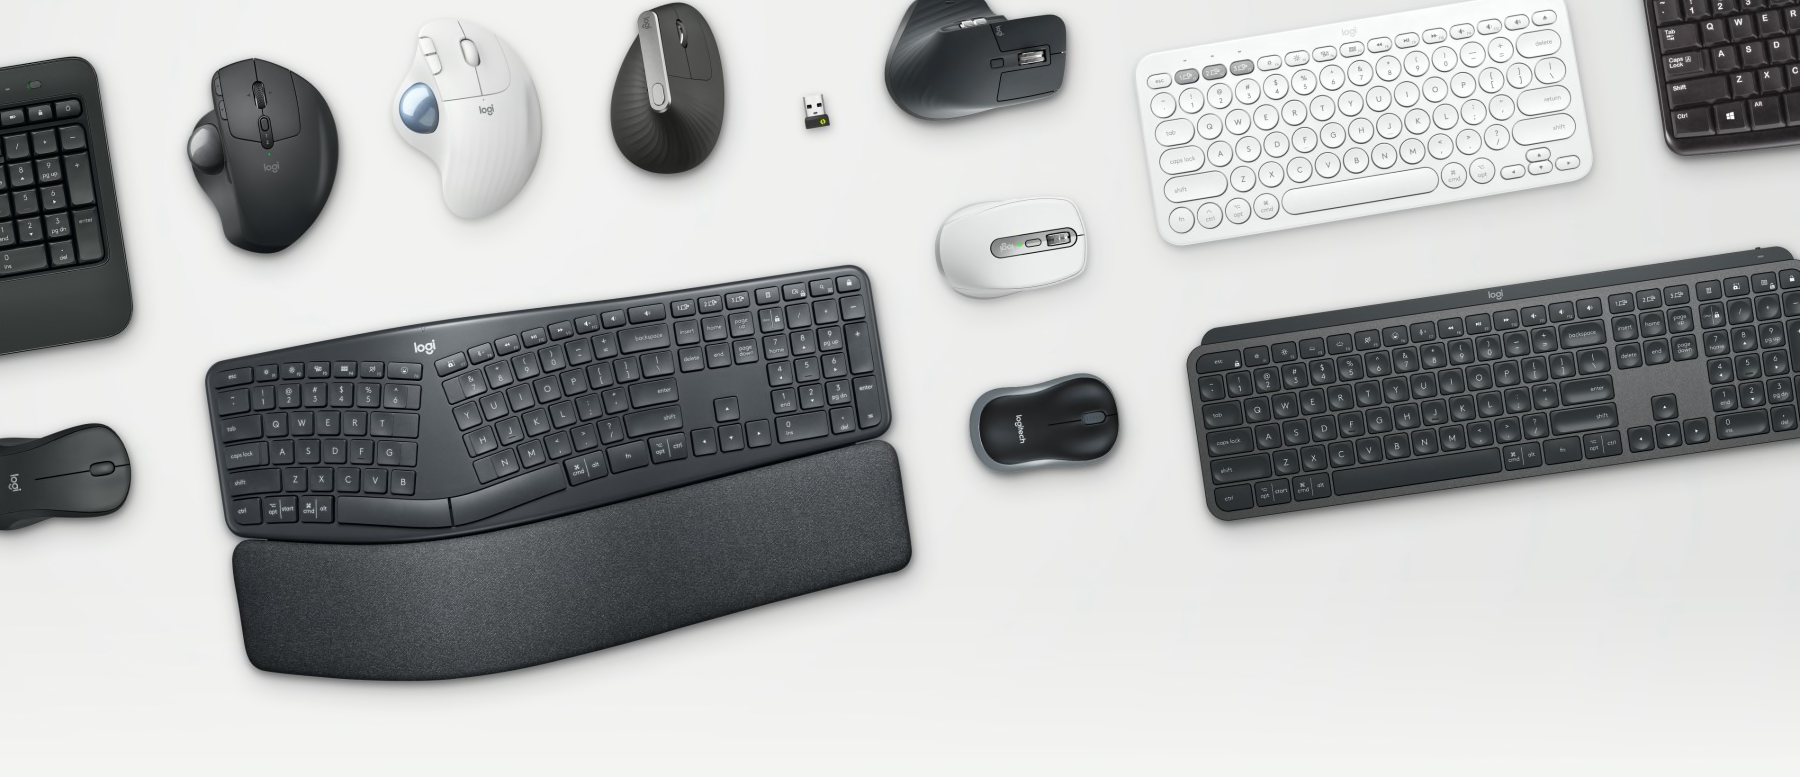 Инструменты для бизнеса — мыши и клавиатуры серии Ergo на столе